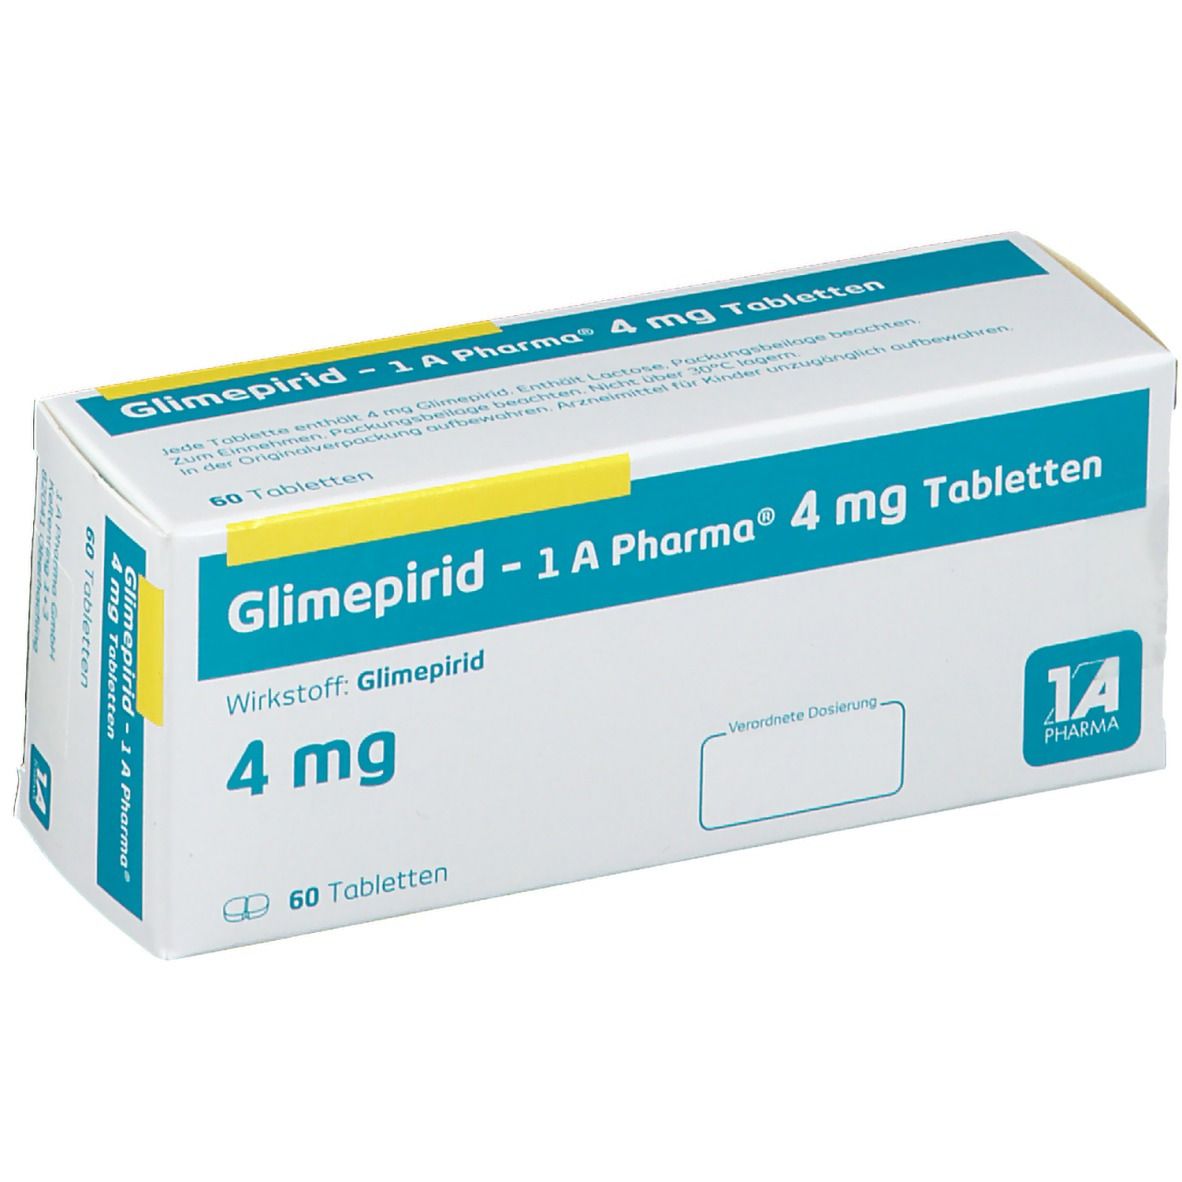 Glimepirid - 1 A Pharma® 4 mg